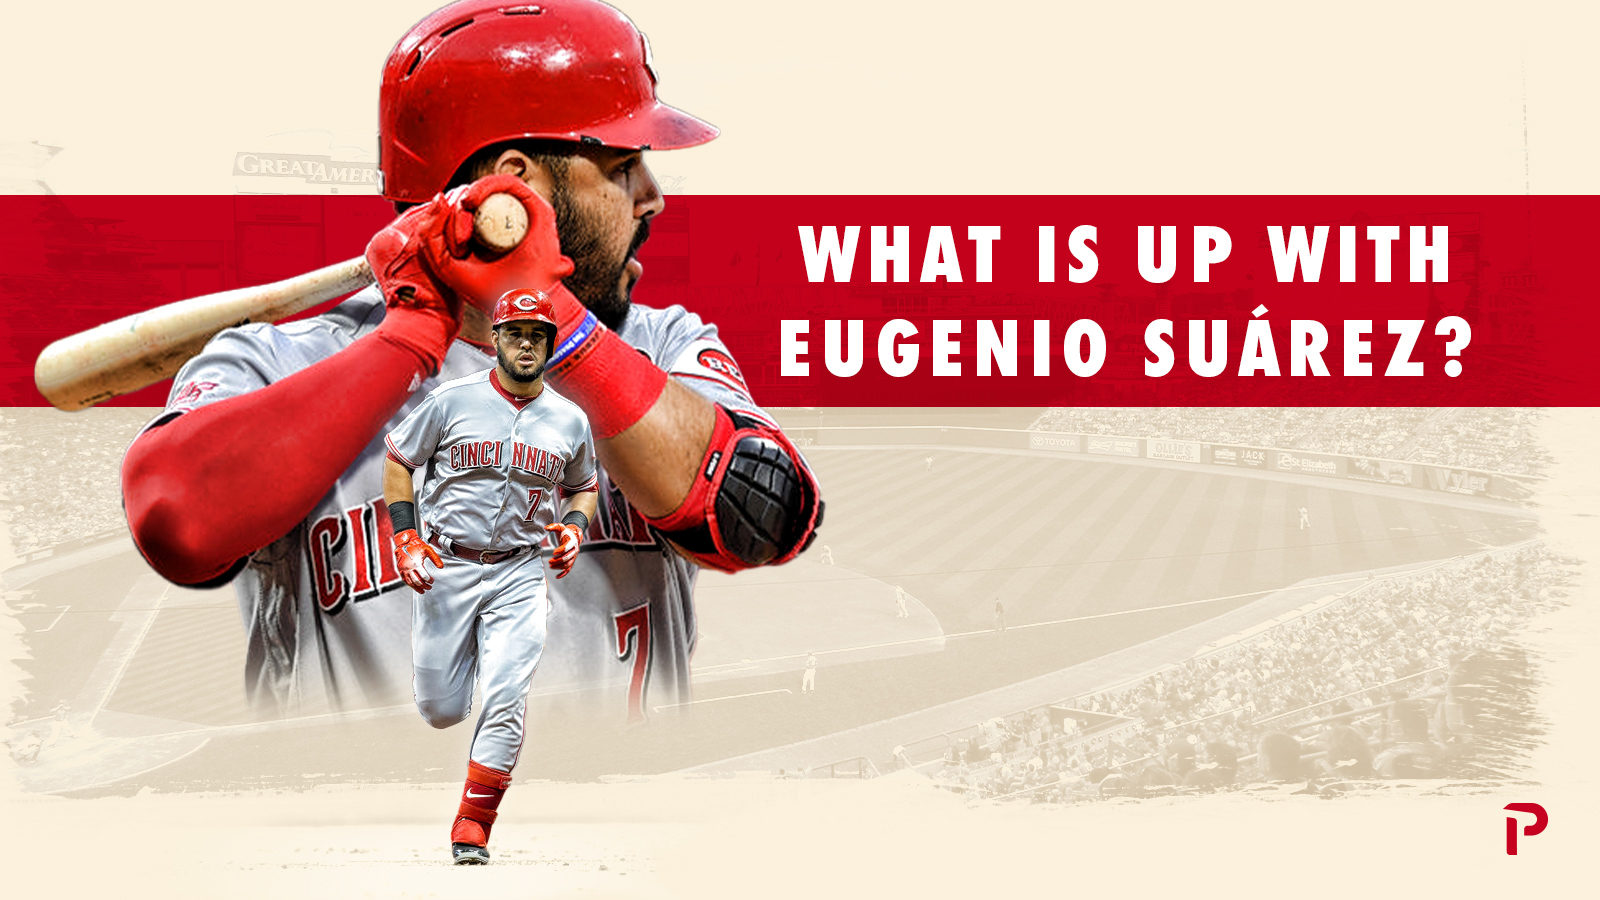 What's next for Eugenio Suarez?